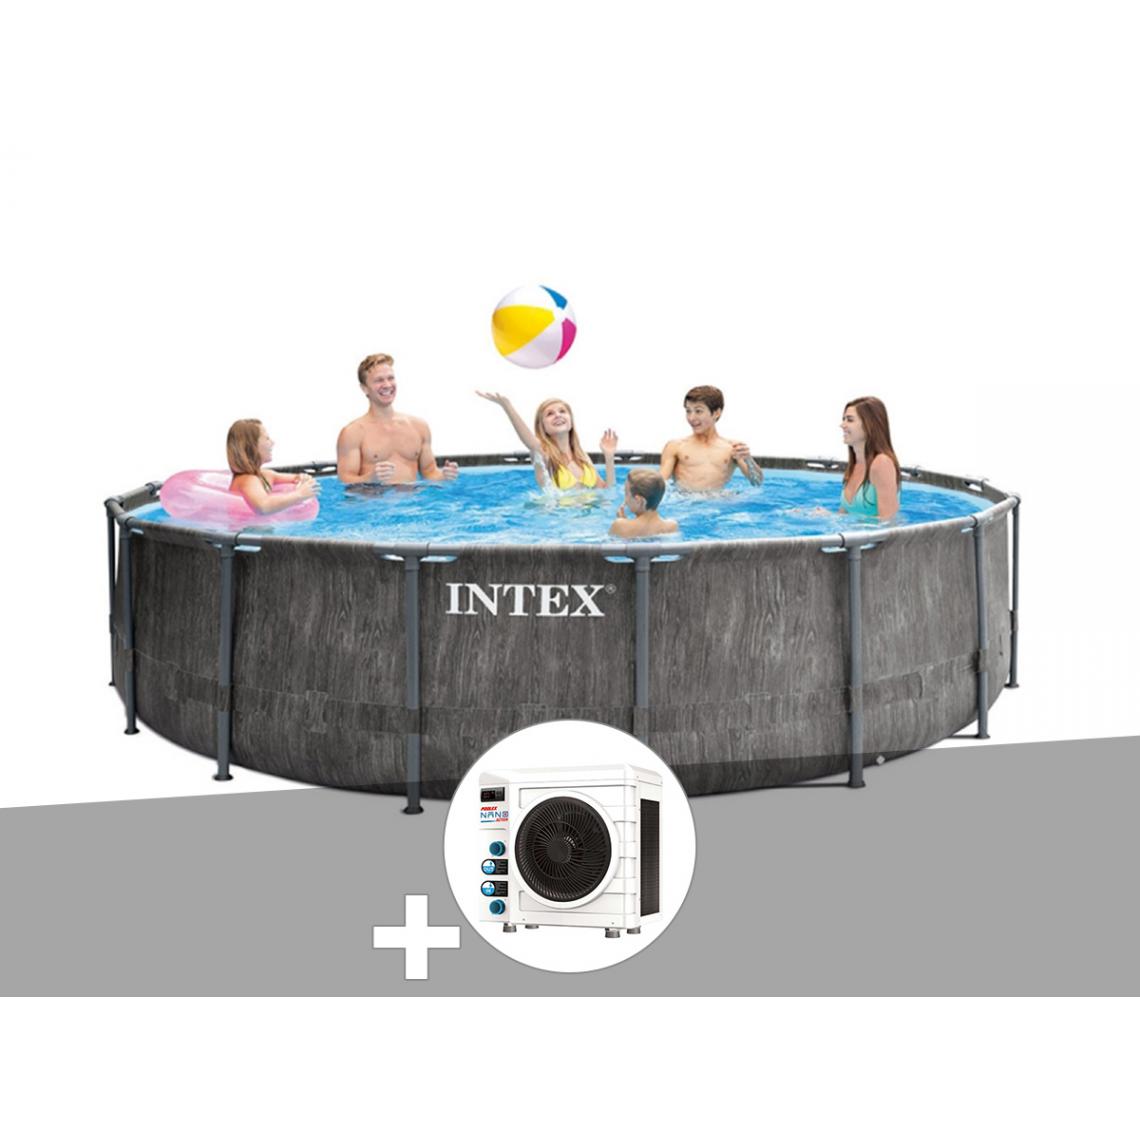 Intex - Kit piscine tubulaire Intex Baltik ronde 4,57 x 1,22 m + Pompe à chaleur - Piscine Tubulaire